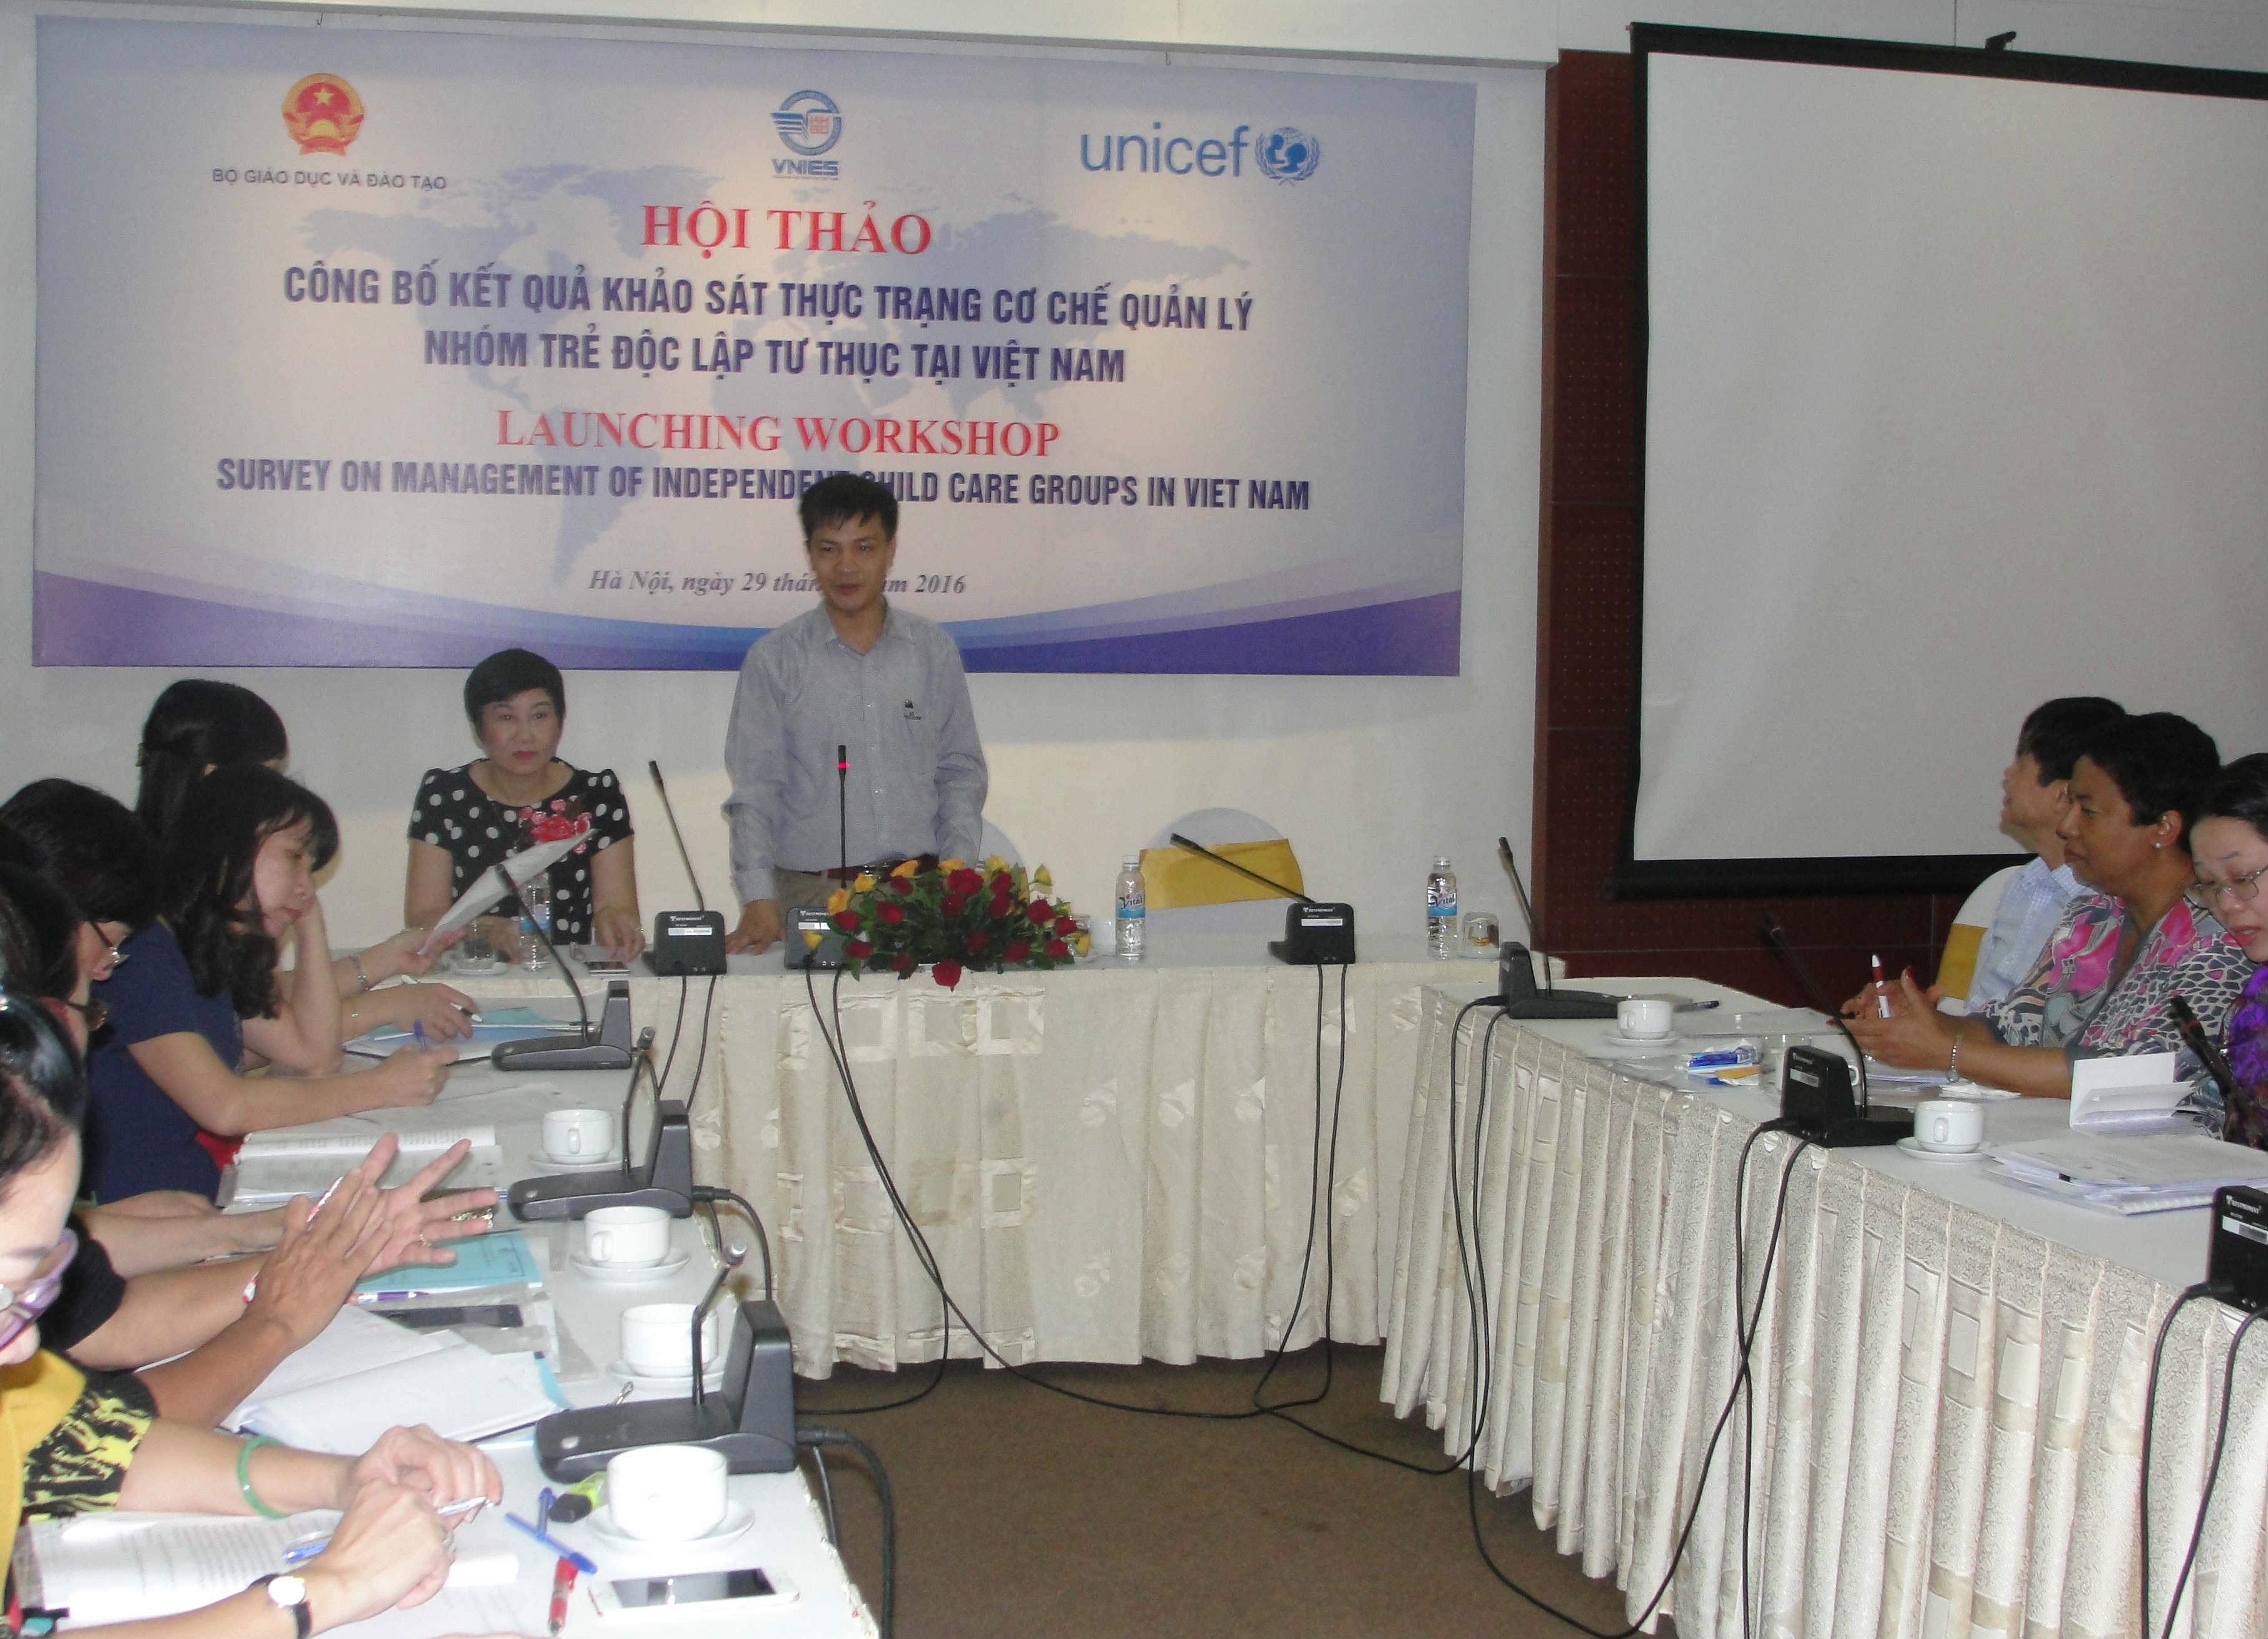 Hội thảo “Công bố kết quả khảo sát thực trạng cơ chế quản lý nhóm trẻ độc lập tư thục tại Việt Nam”